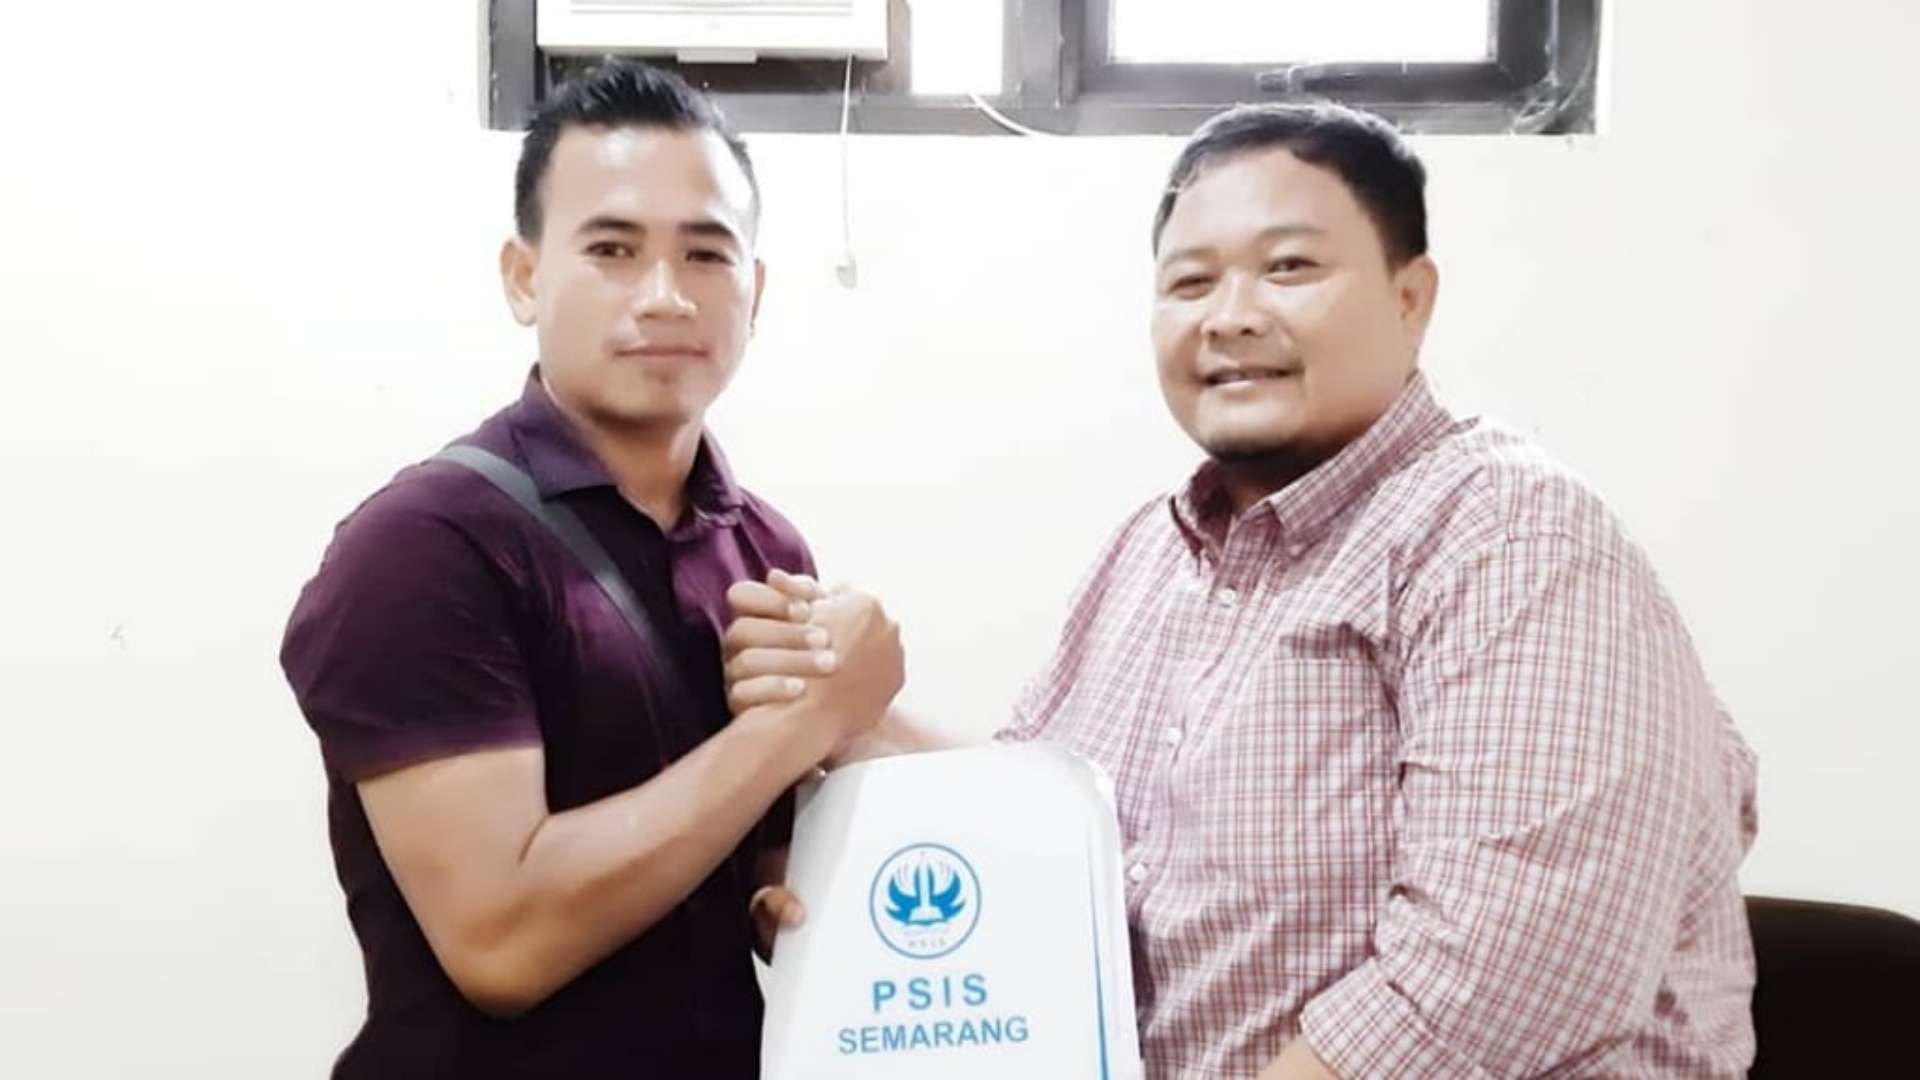 Endang Subrata - PSIS Semarang